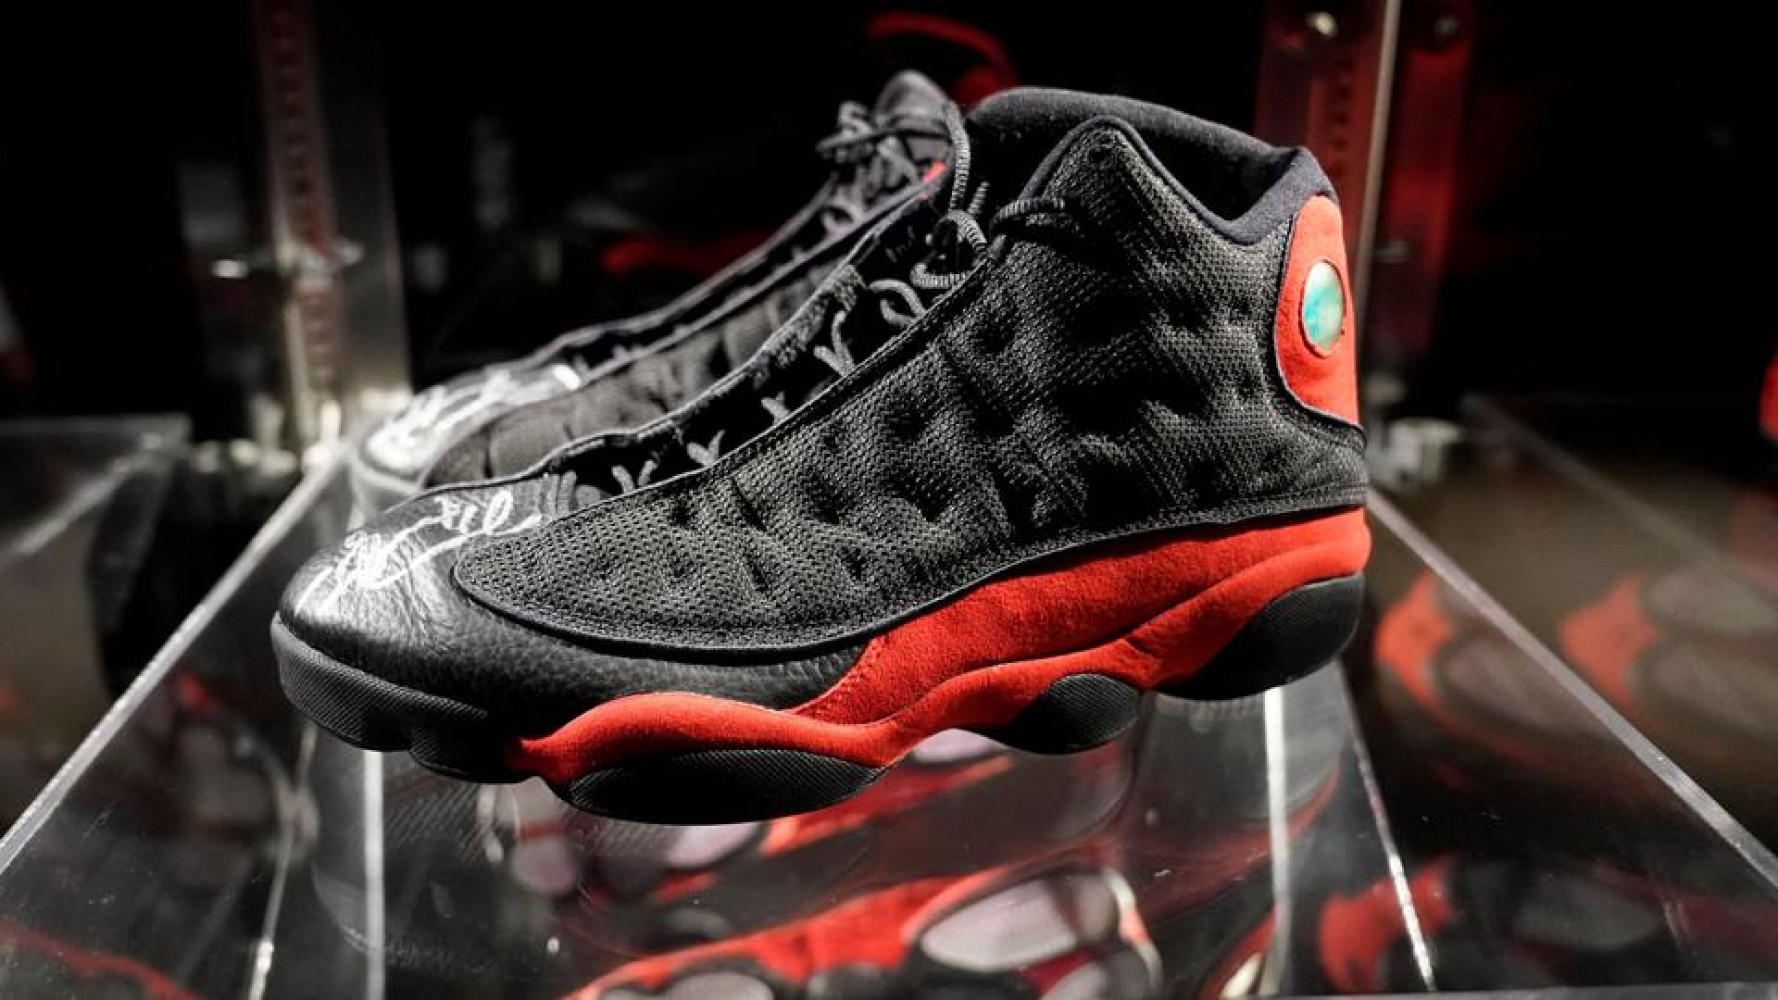 Michael Jordan’ın ‘Son Dans’ındaki ayakkabıları rekor fiyata alıcı buldu